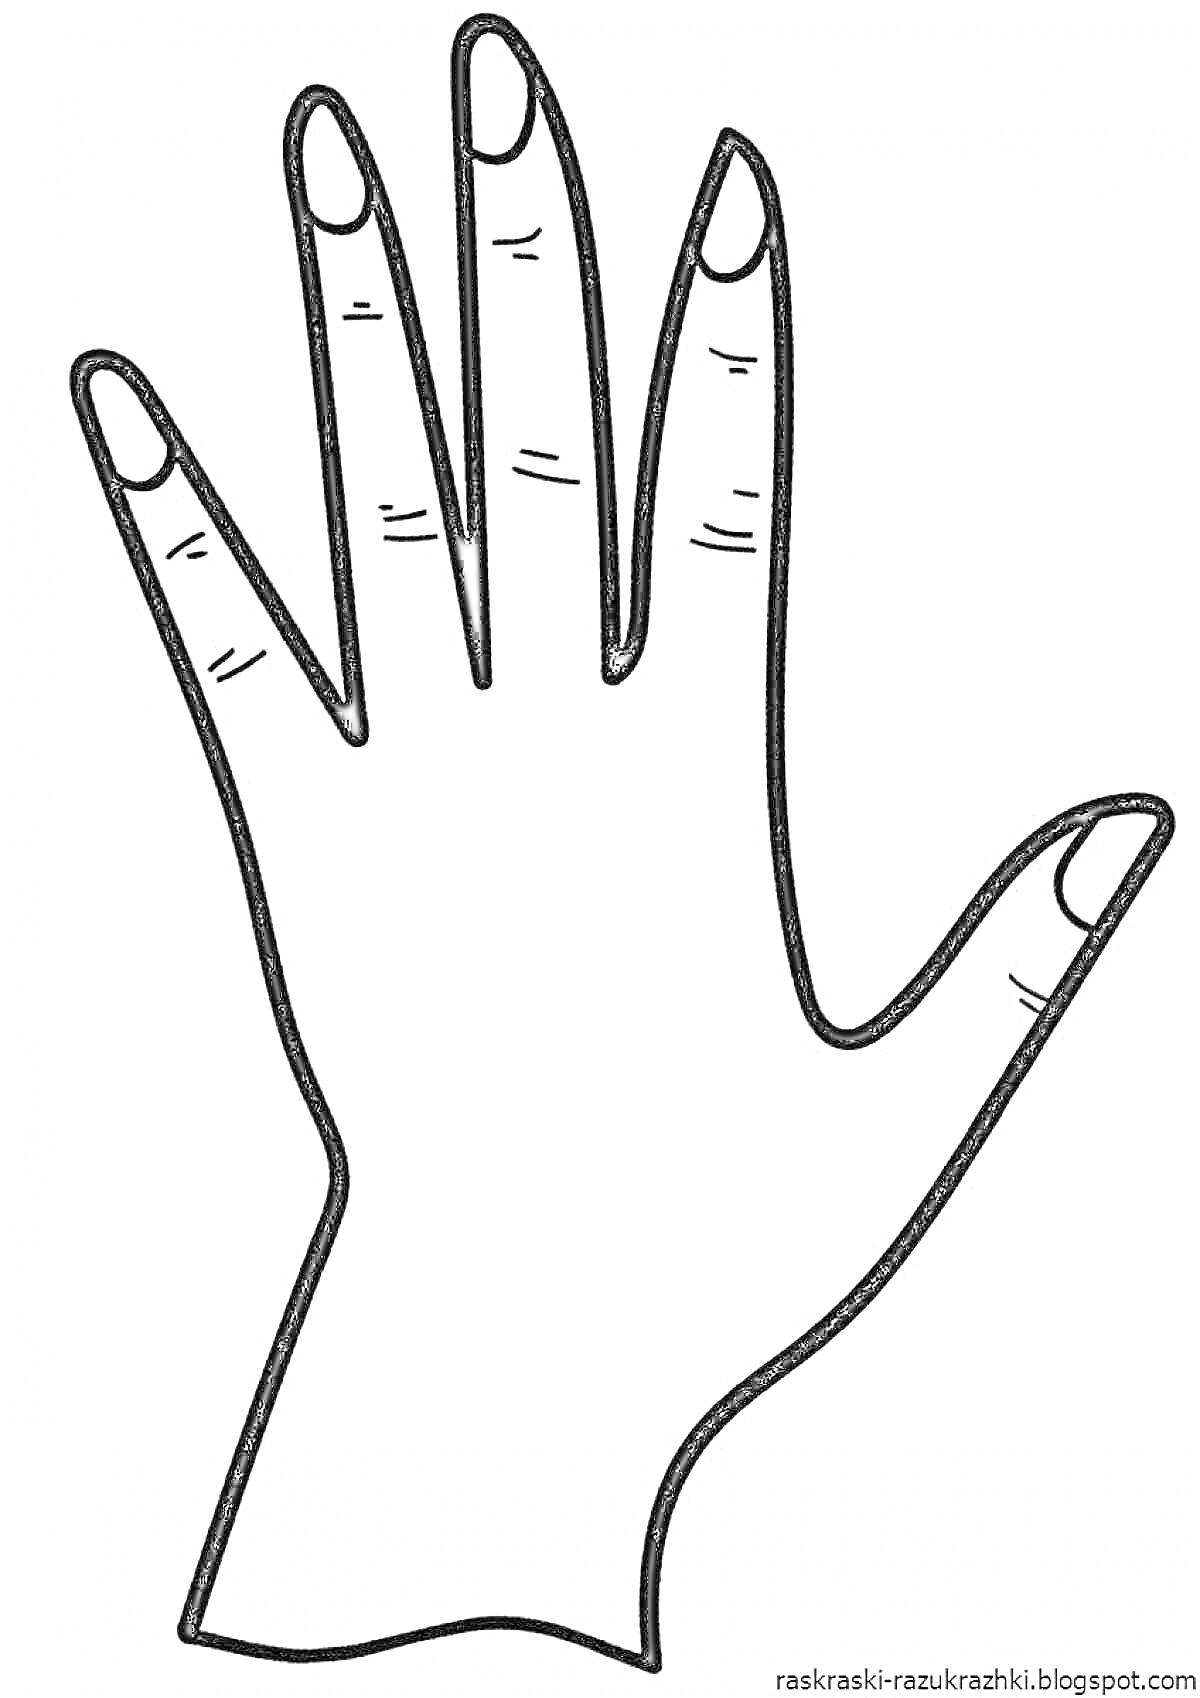 Рисунок руки с расправленными пальцами